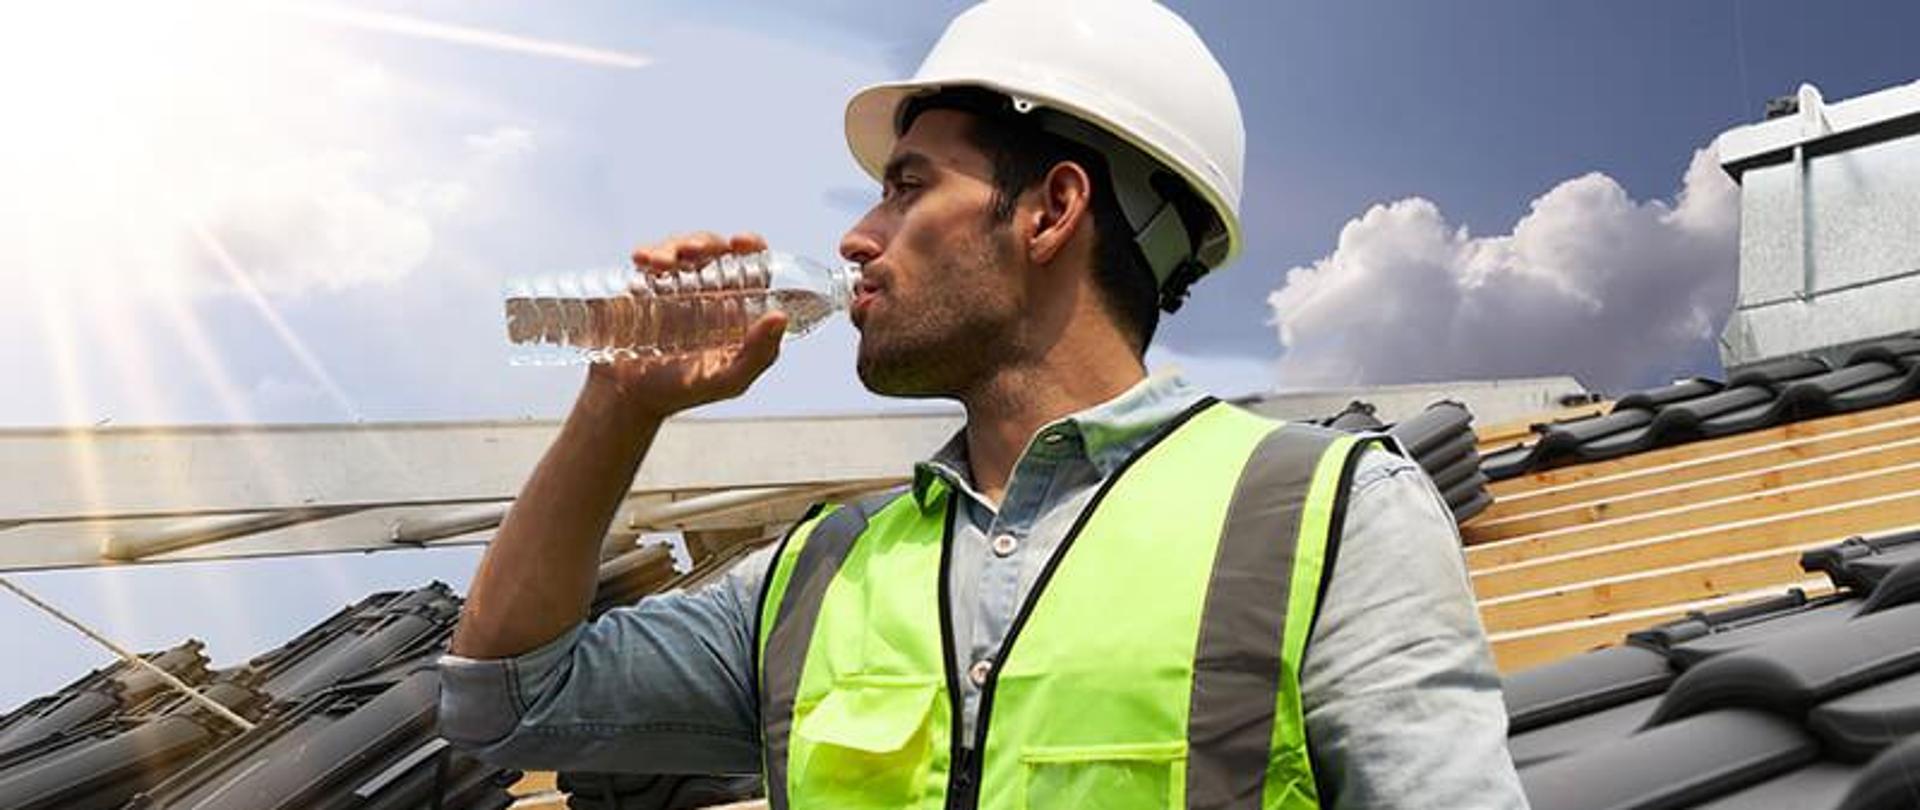 Pracownik budowlany pijący wodę z butelki w czasie upału.